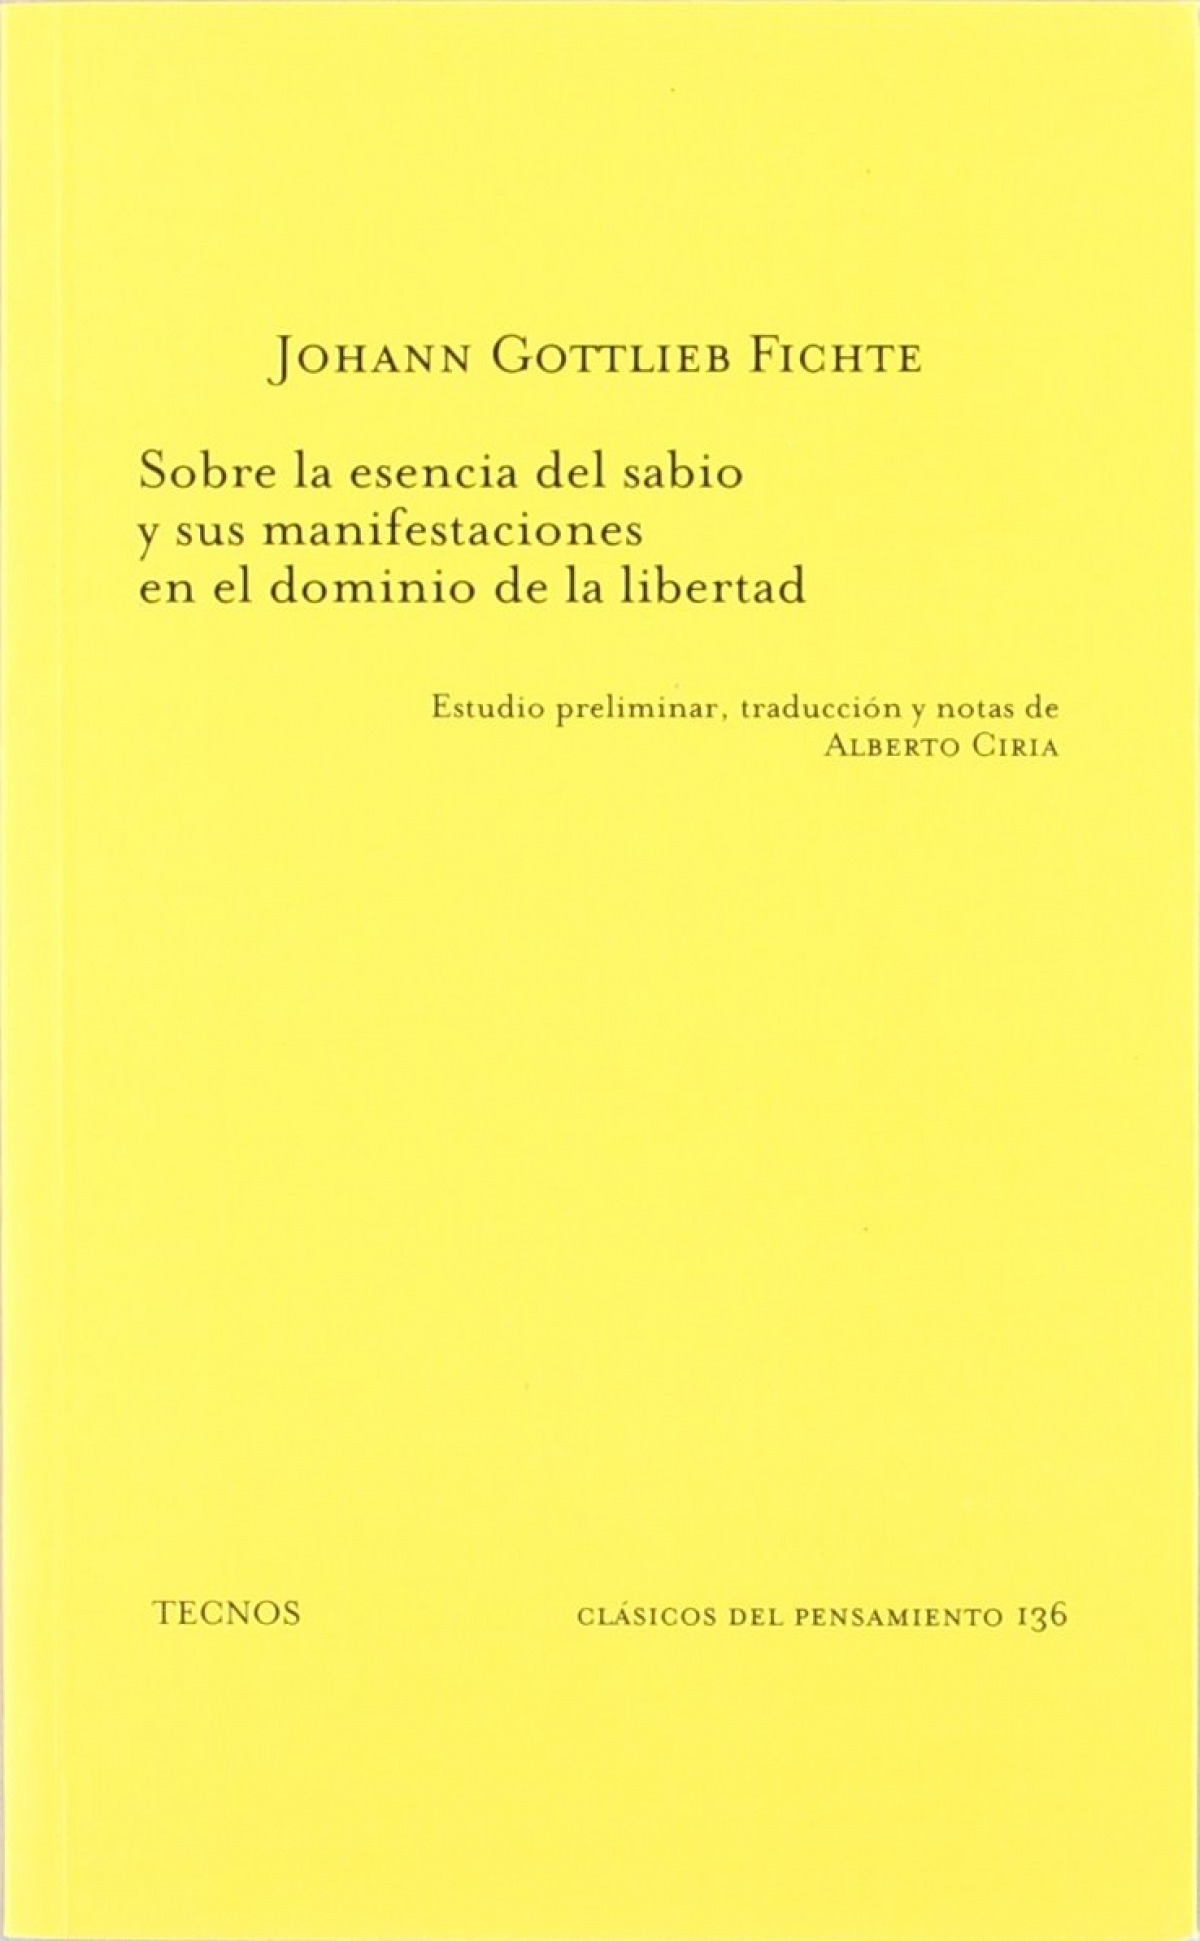 Sobre la esencia del sabio y manifestaciones en dominio libe clasicos - Gottlieb Fichte, Johann